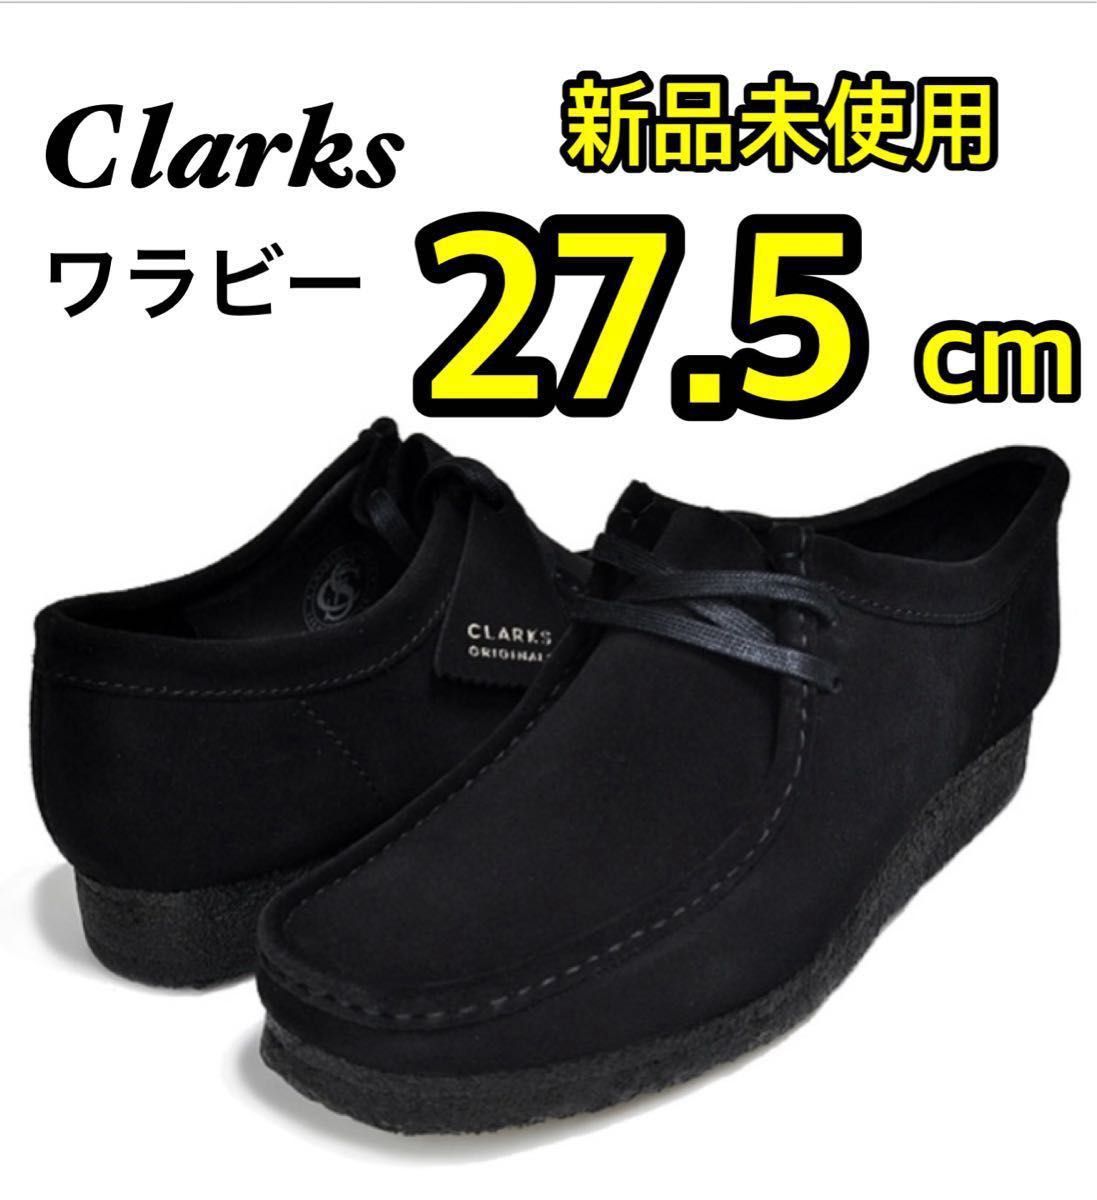 【新品 値下げ中】 Clarks Wallabee クラークス ワラビー ブラック スエード モカシン UK9.5 27.5cm